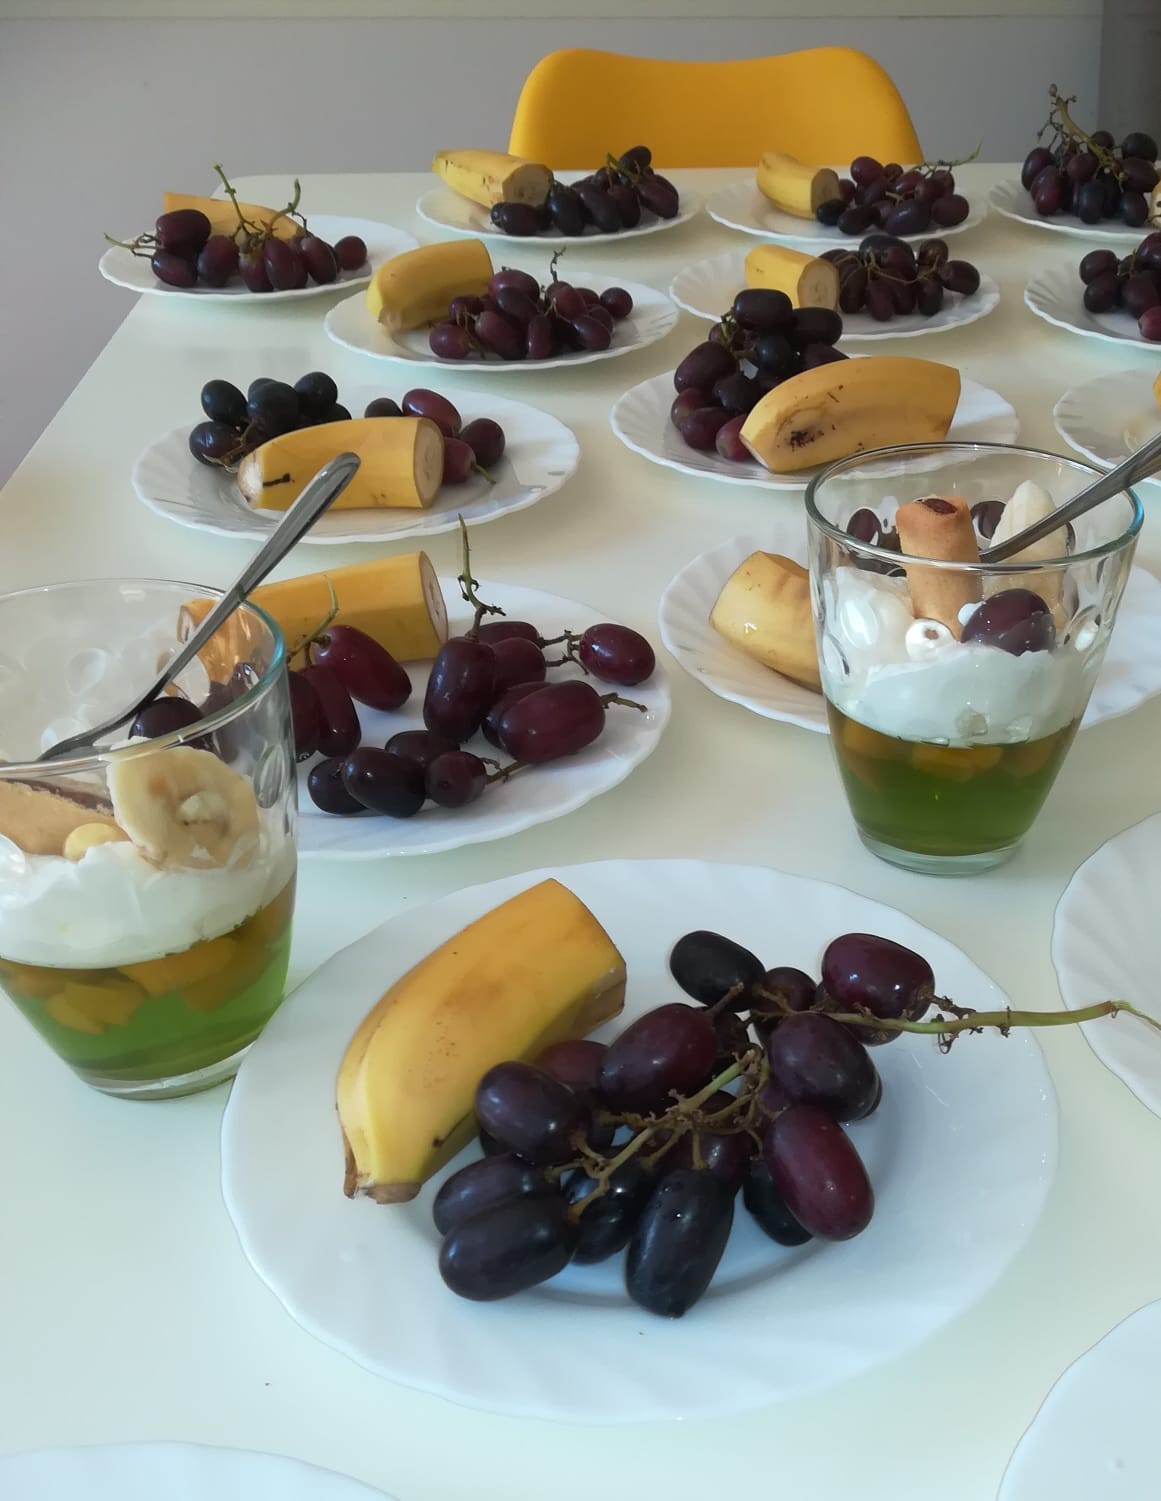 Na białym stole leżą talerzyki z owocami (banany i winogrona) oraz pucharki z deserem na bazie galaretki z owocami, ozdobionej bitą śmietaną i świeżymi owocami.